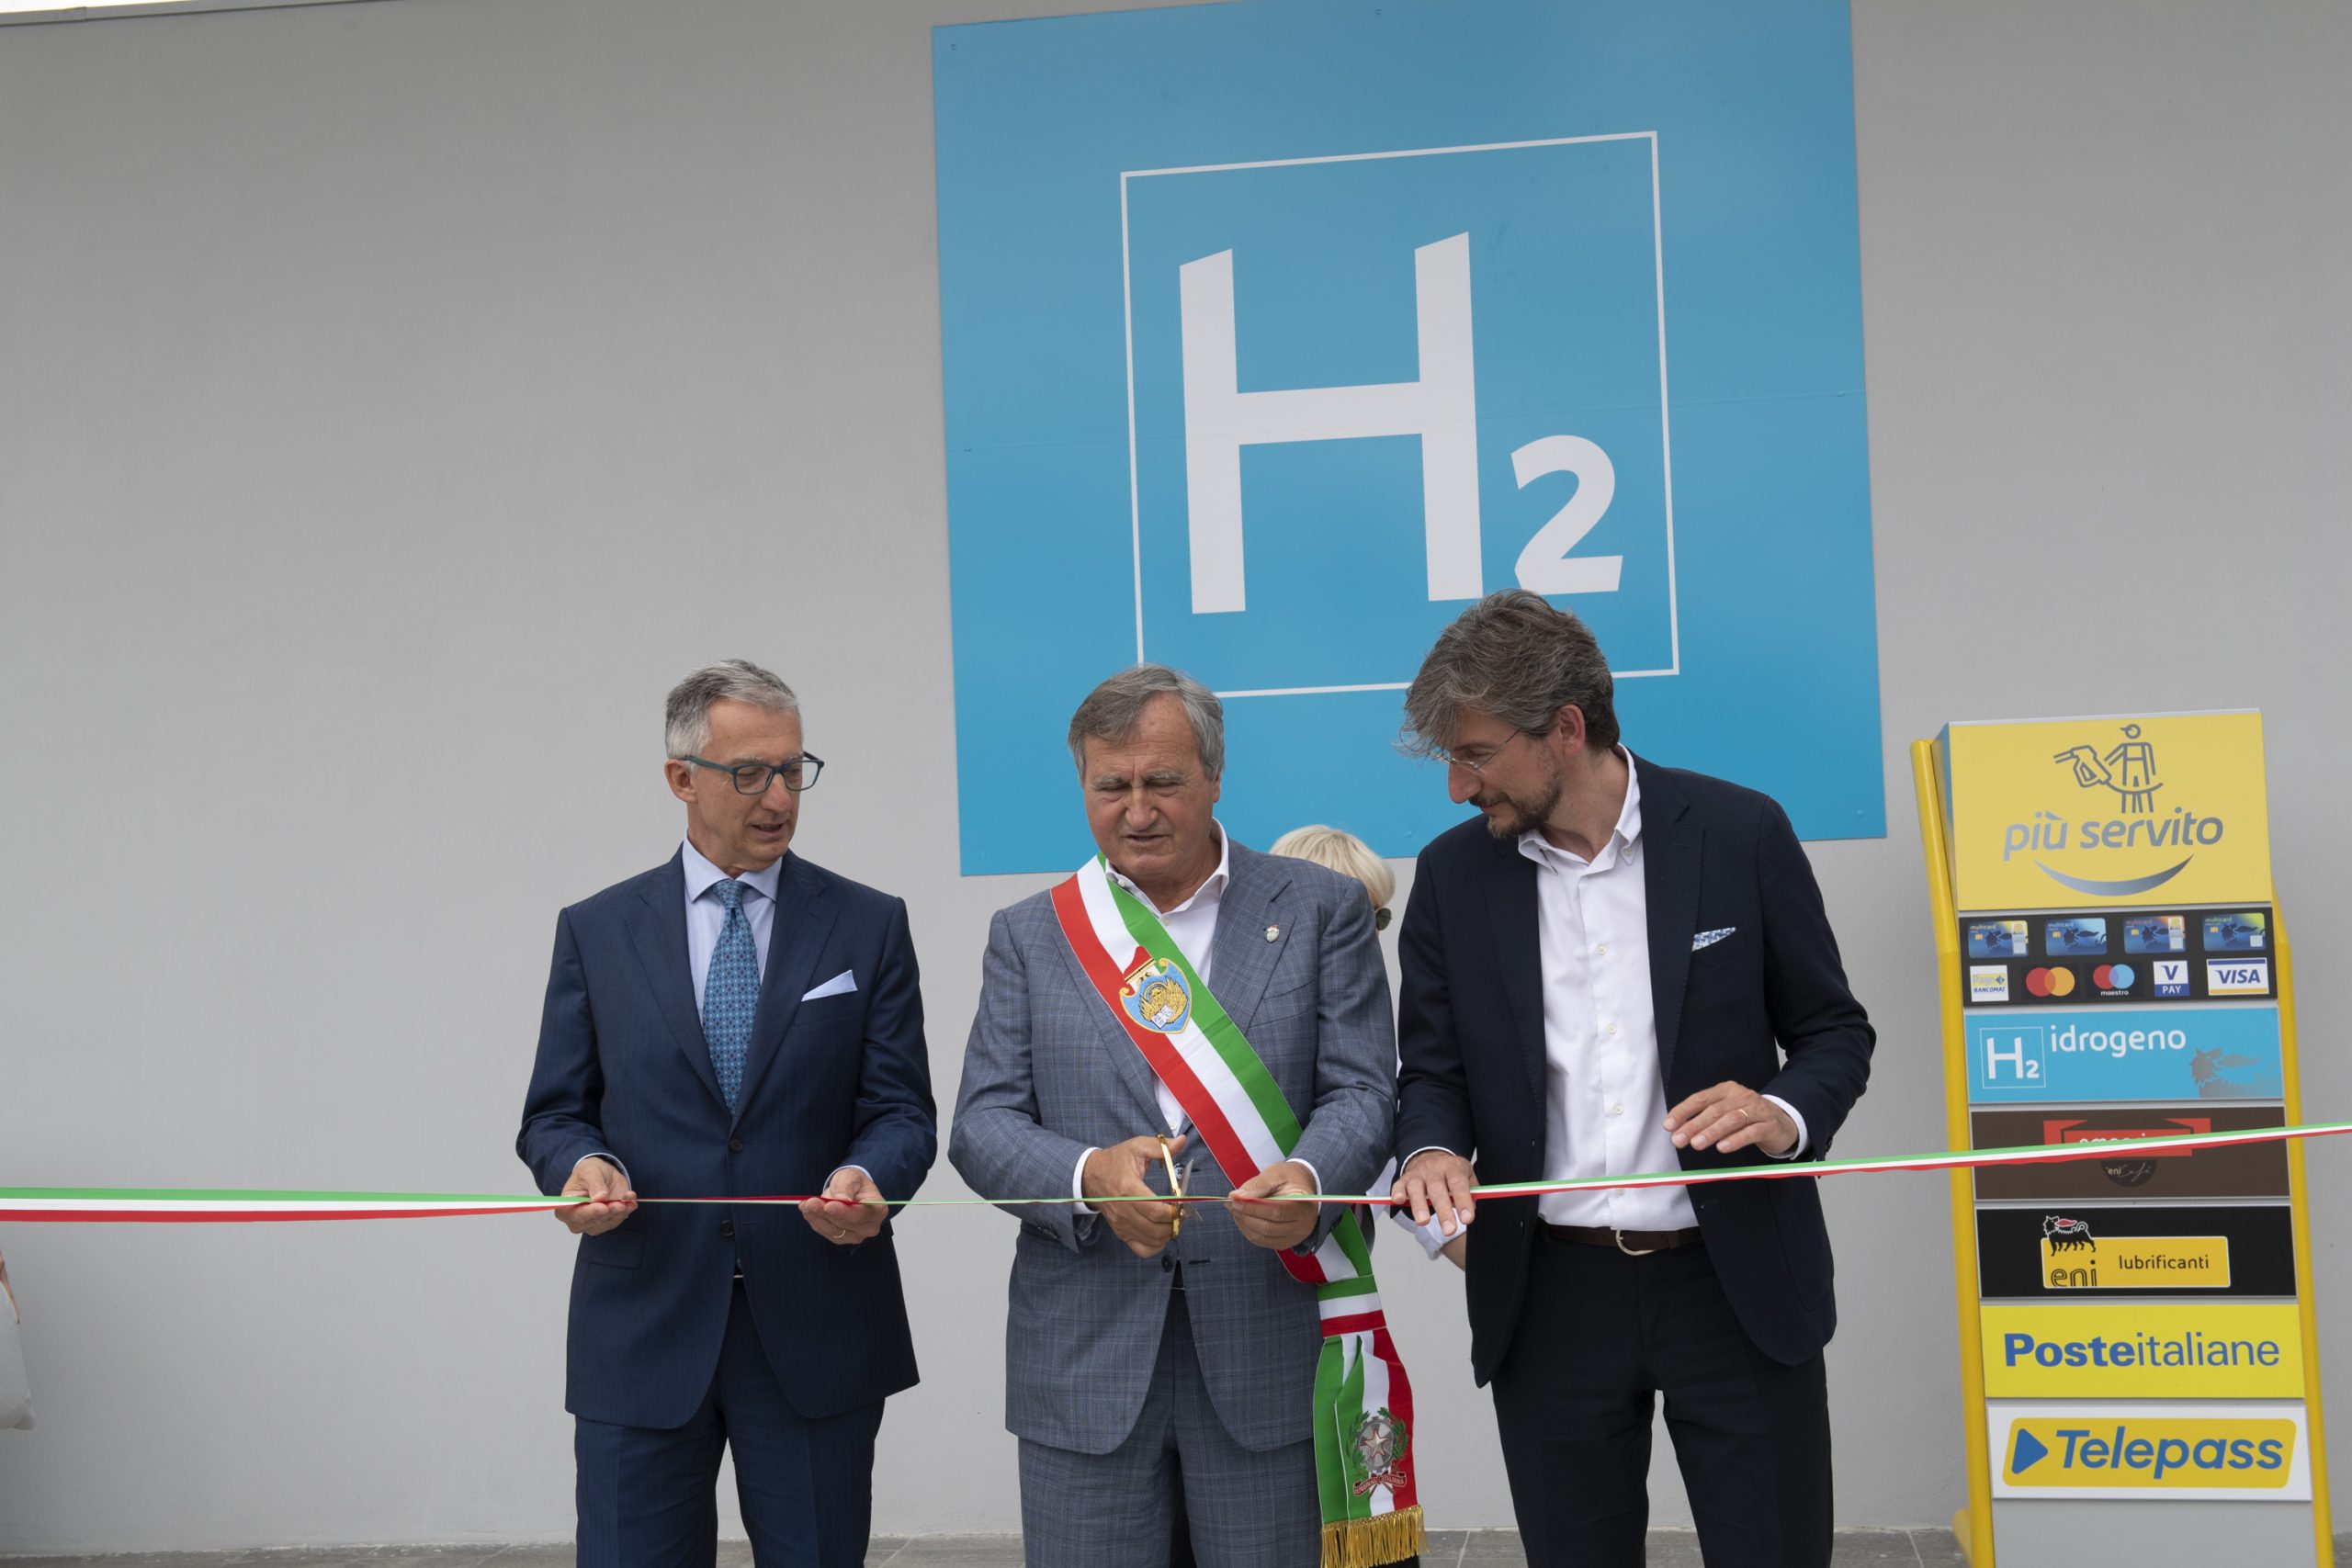 La stazione di idrogeno Eni di Venezia è finalmente realtà. Da qui parte l’ecosistema sostenibile Toyota